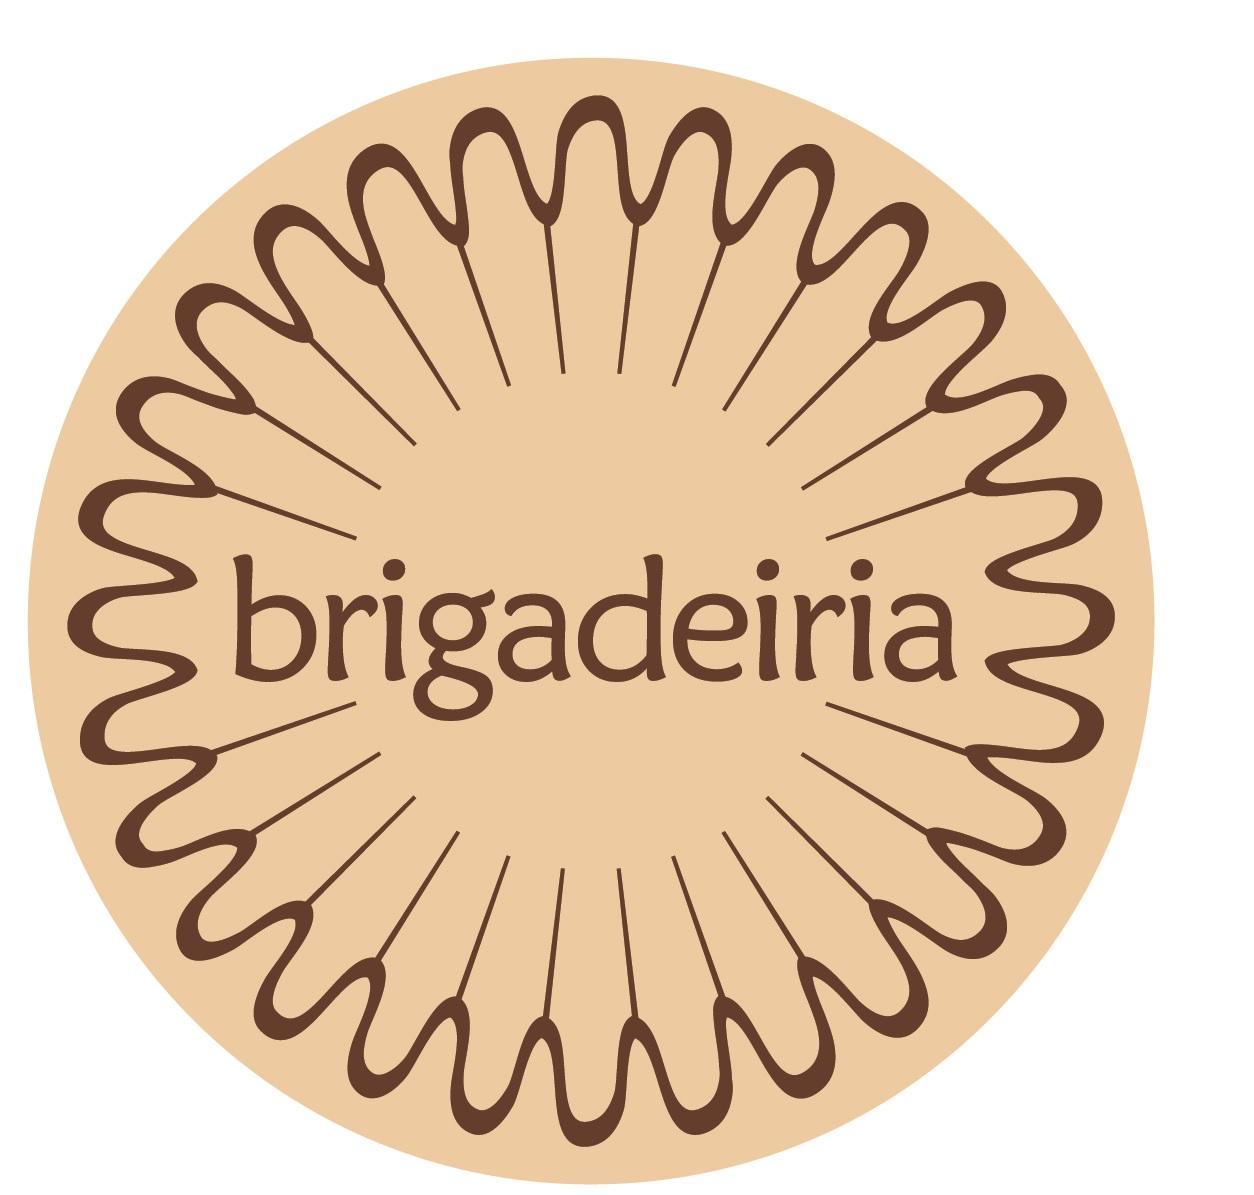 Brigadeiria